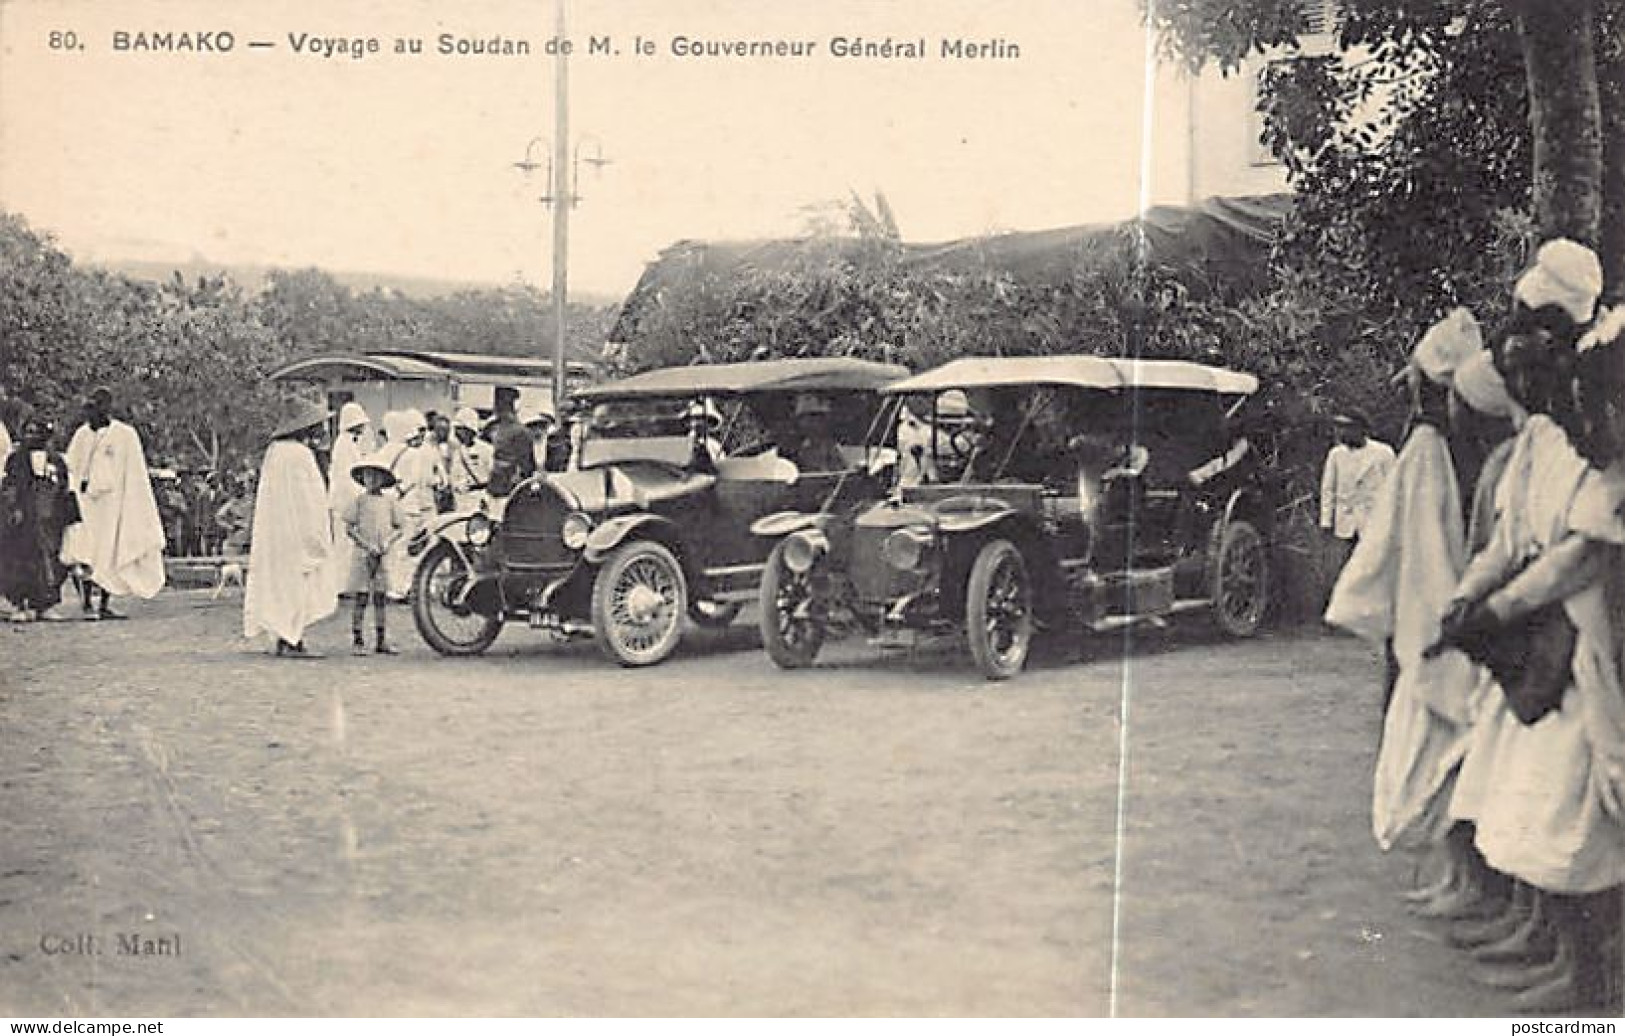 Mali - BAMAKO - Voyage De M. Le Gouverneur Général De L'A.O.F. Merlin - Automobiles - Ed. Mahl 80 - Mali